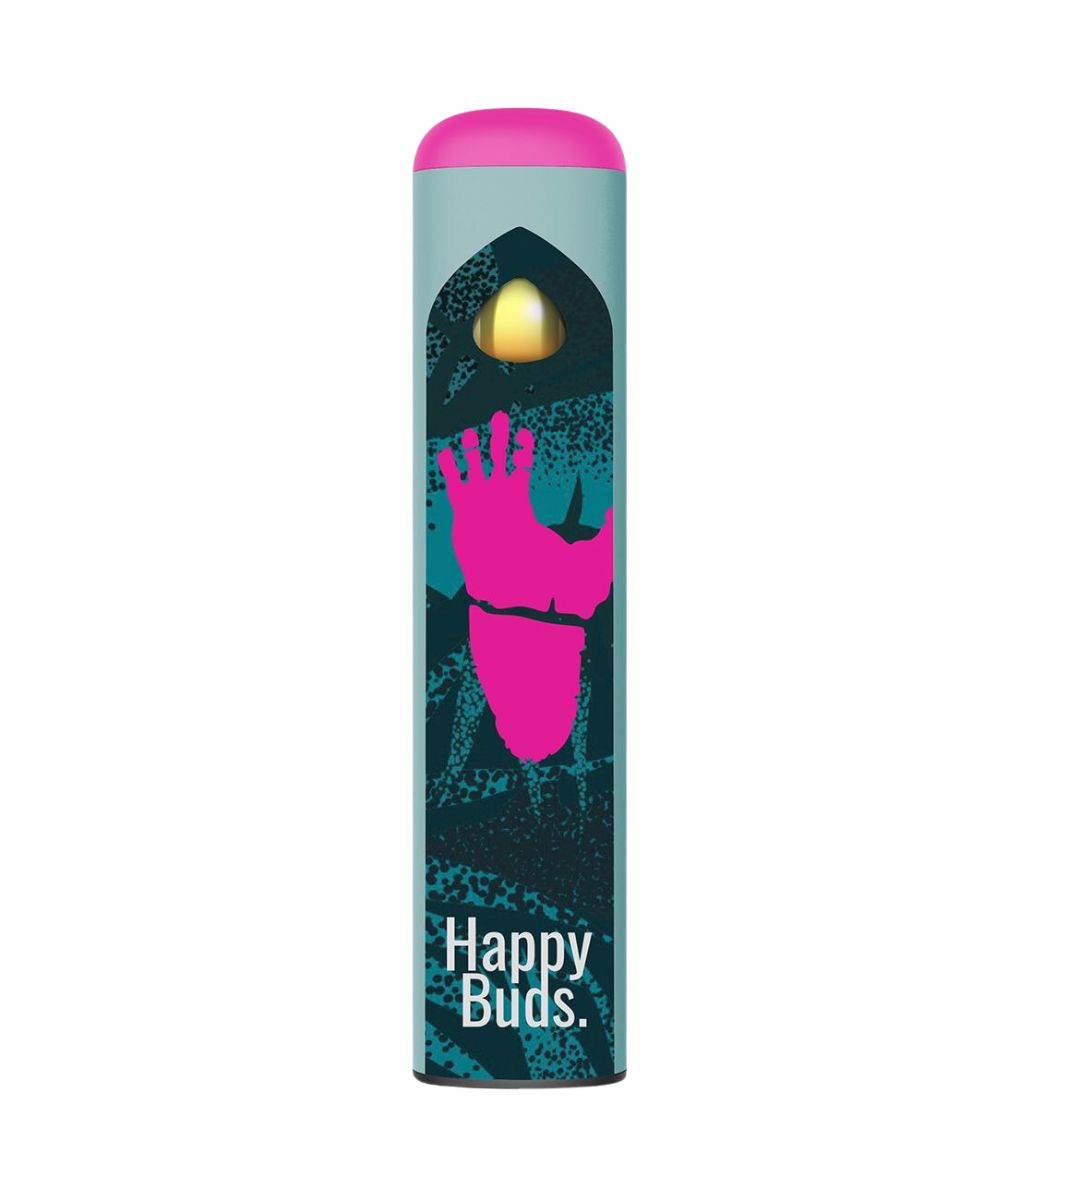 Gorilla Glue - HappyVape Vaporizer. Das Design zeigt eine Hand mit gespreizten Fingern in kräftigem Pink auf dunkelblauem Hintergrund mit spritzerartigen Texturen. Über der Hand befindet sich eine gelbe Kugel oder Kapsel, die im oberen Teil eines zylindrischen Behälters zu schweben scheint. Das Gesamtdesign ist modern und auffällig.